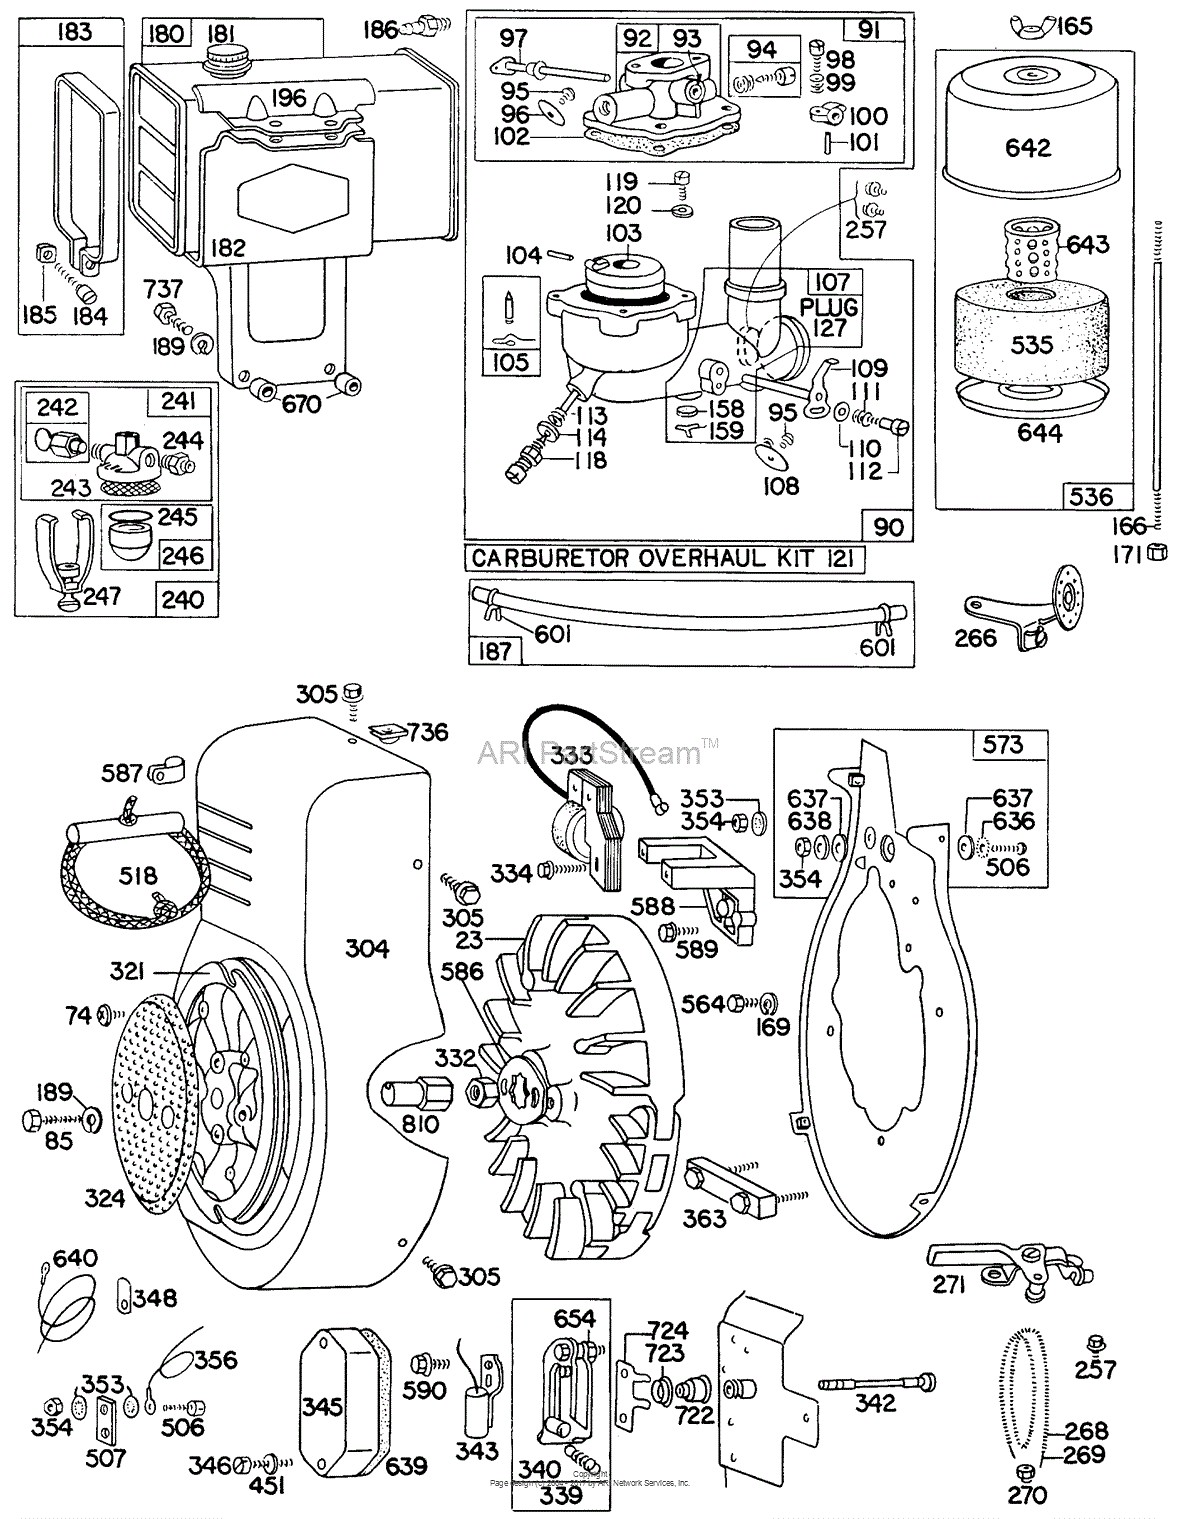 Briggs and Stratton Parts Diagrams Briggs Stratton Engine Carburetor Diagram Auto Electrical Wiring Diagram Of Briggs and Stratton Parts Diagrams